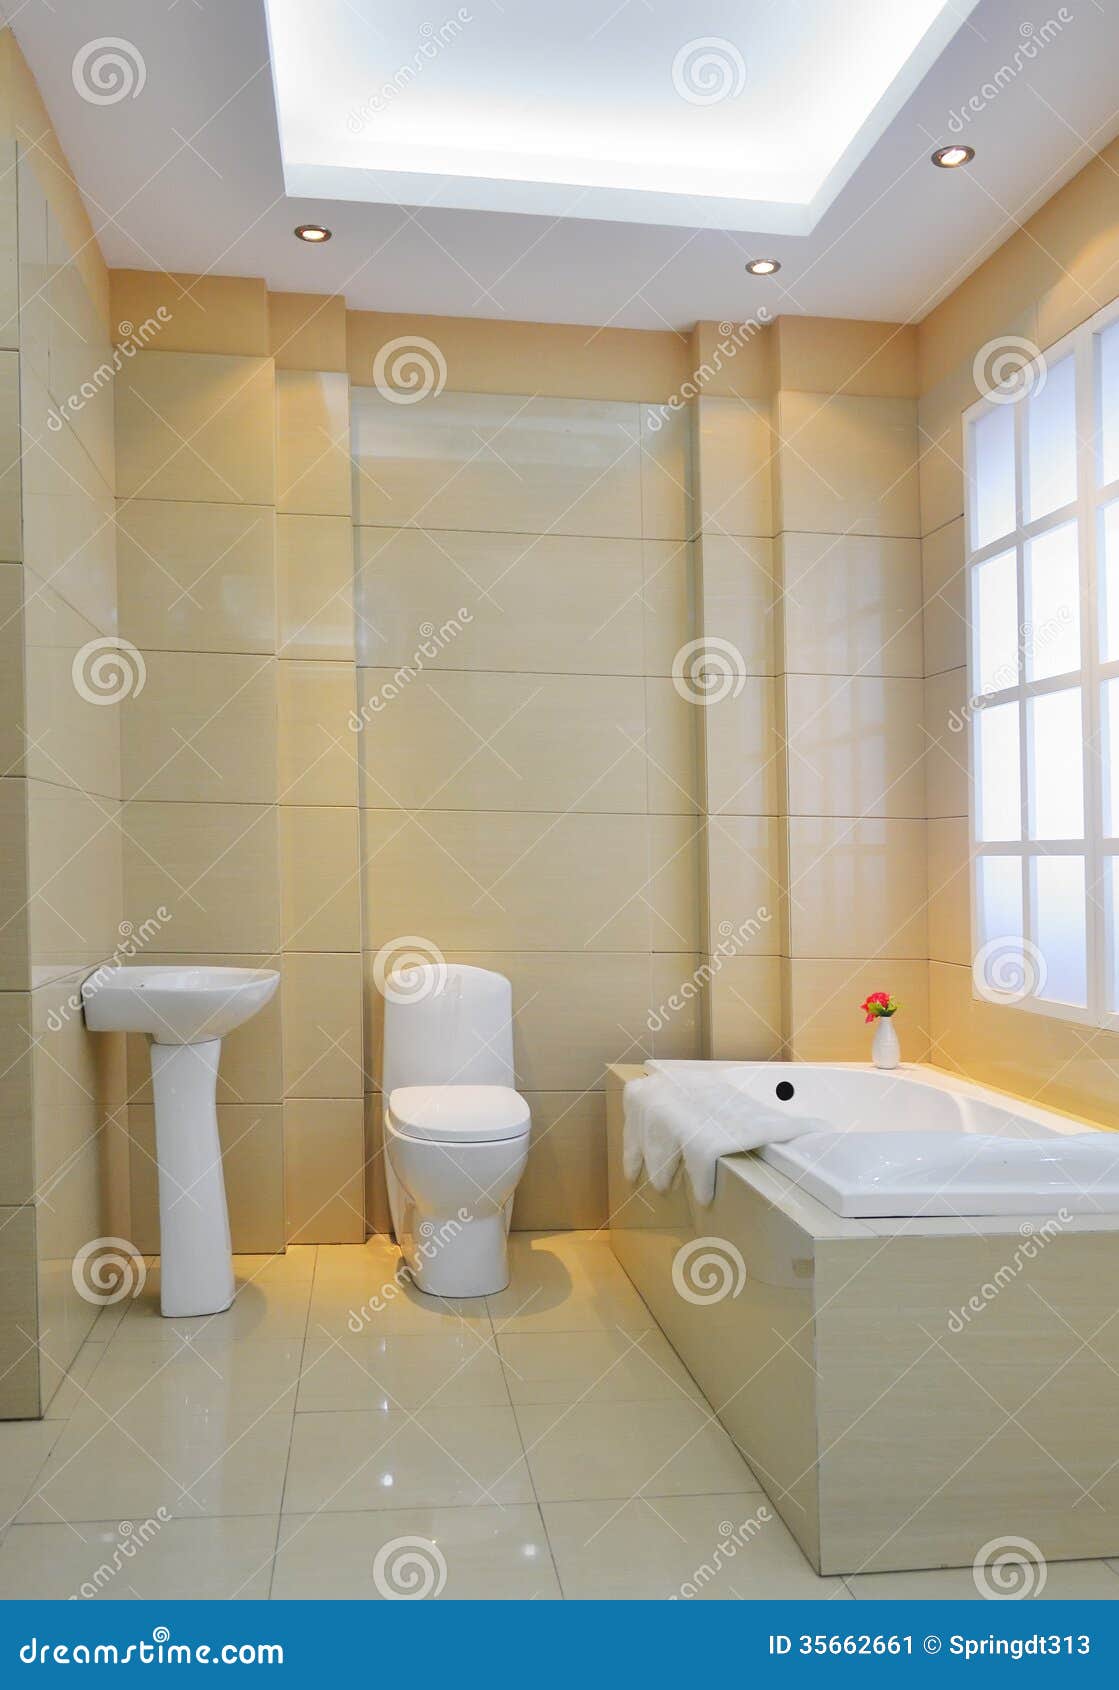 现代卫生间. 有现代装饰的豪华卫生间